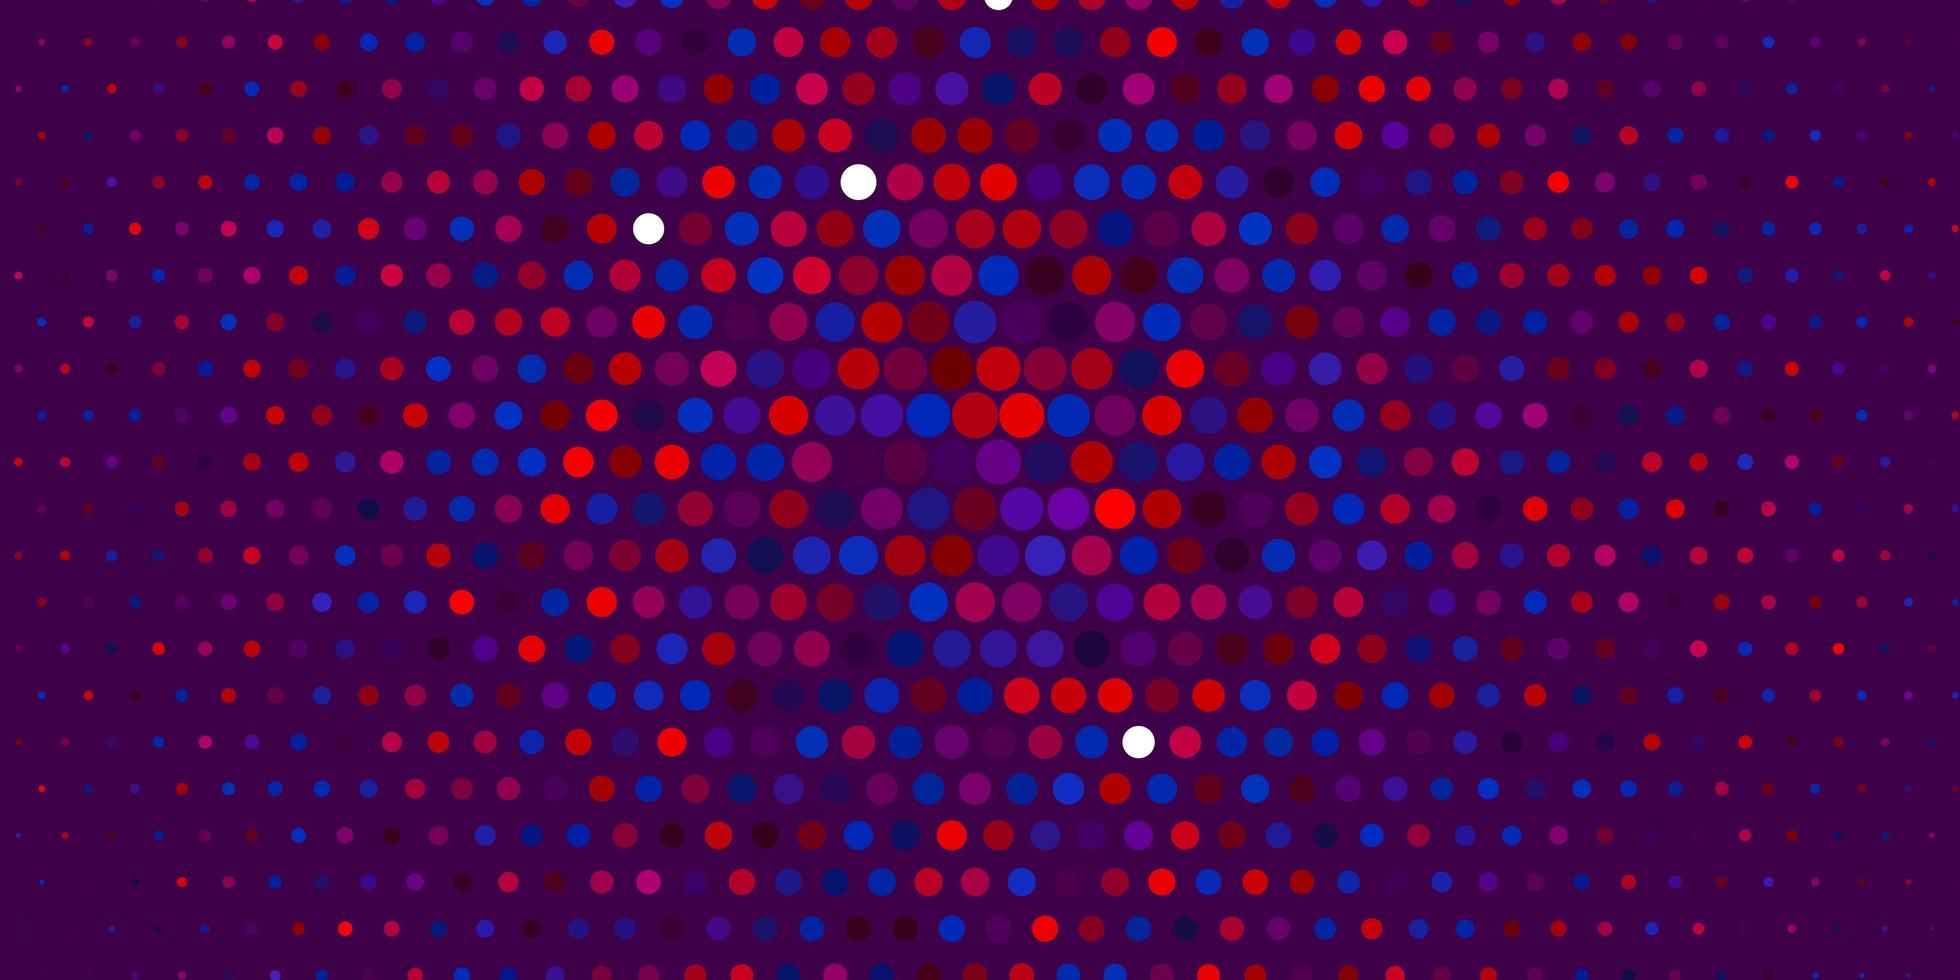 modelo de vetor azul e vermelho claro com círculos.